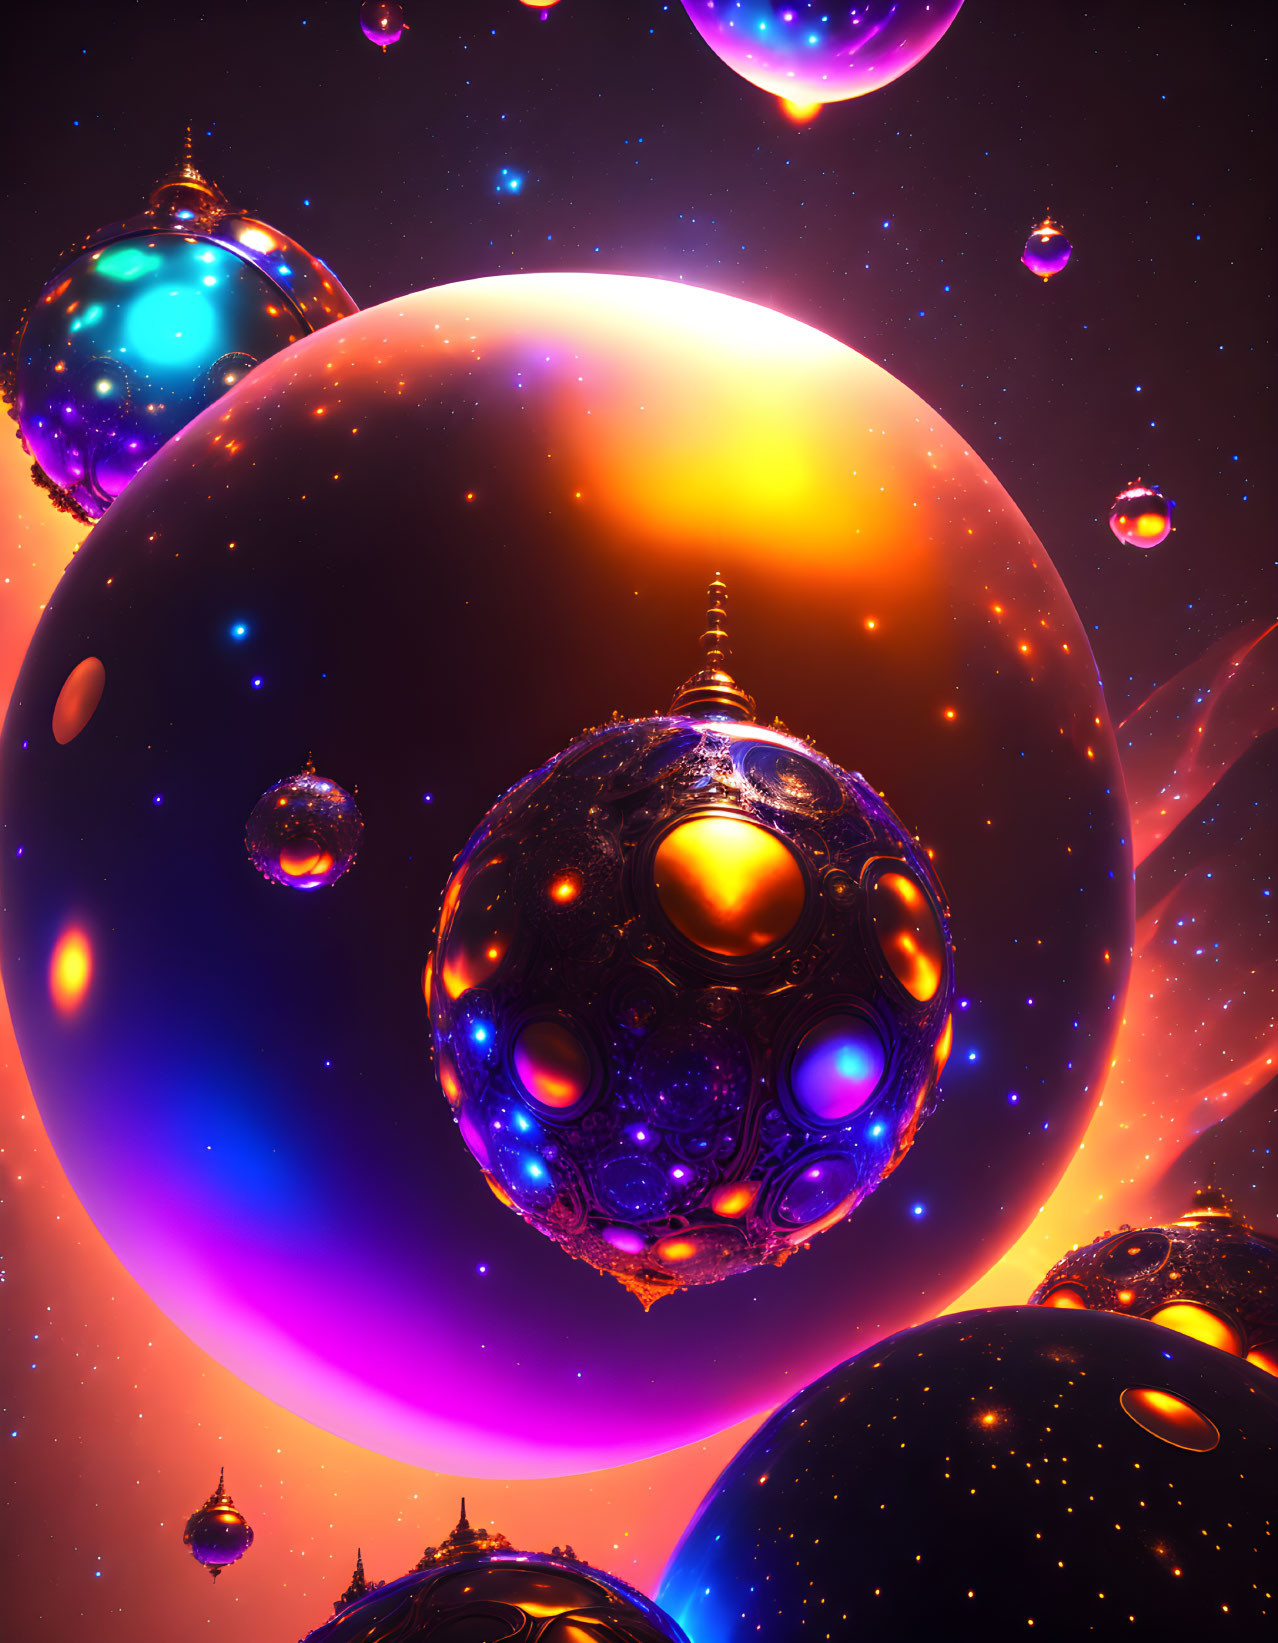 Ornate glowing spheres in vibrant cosmic scene